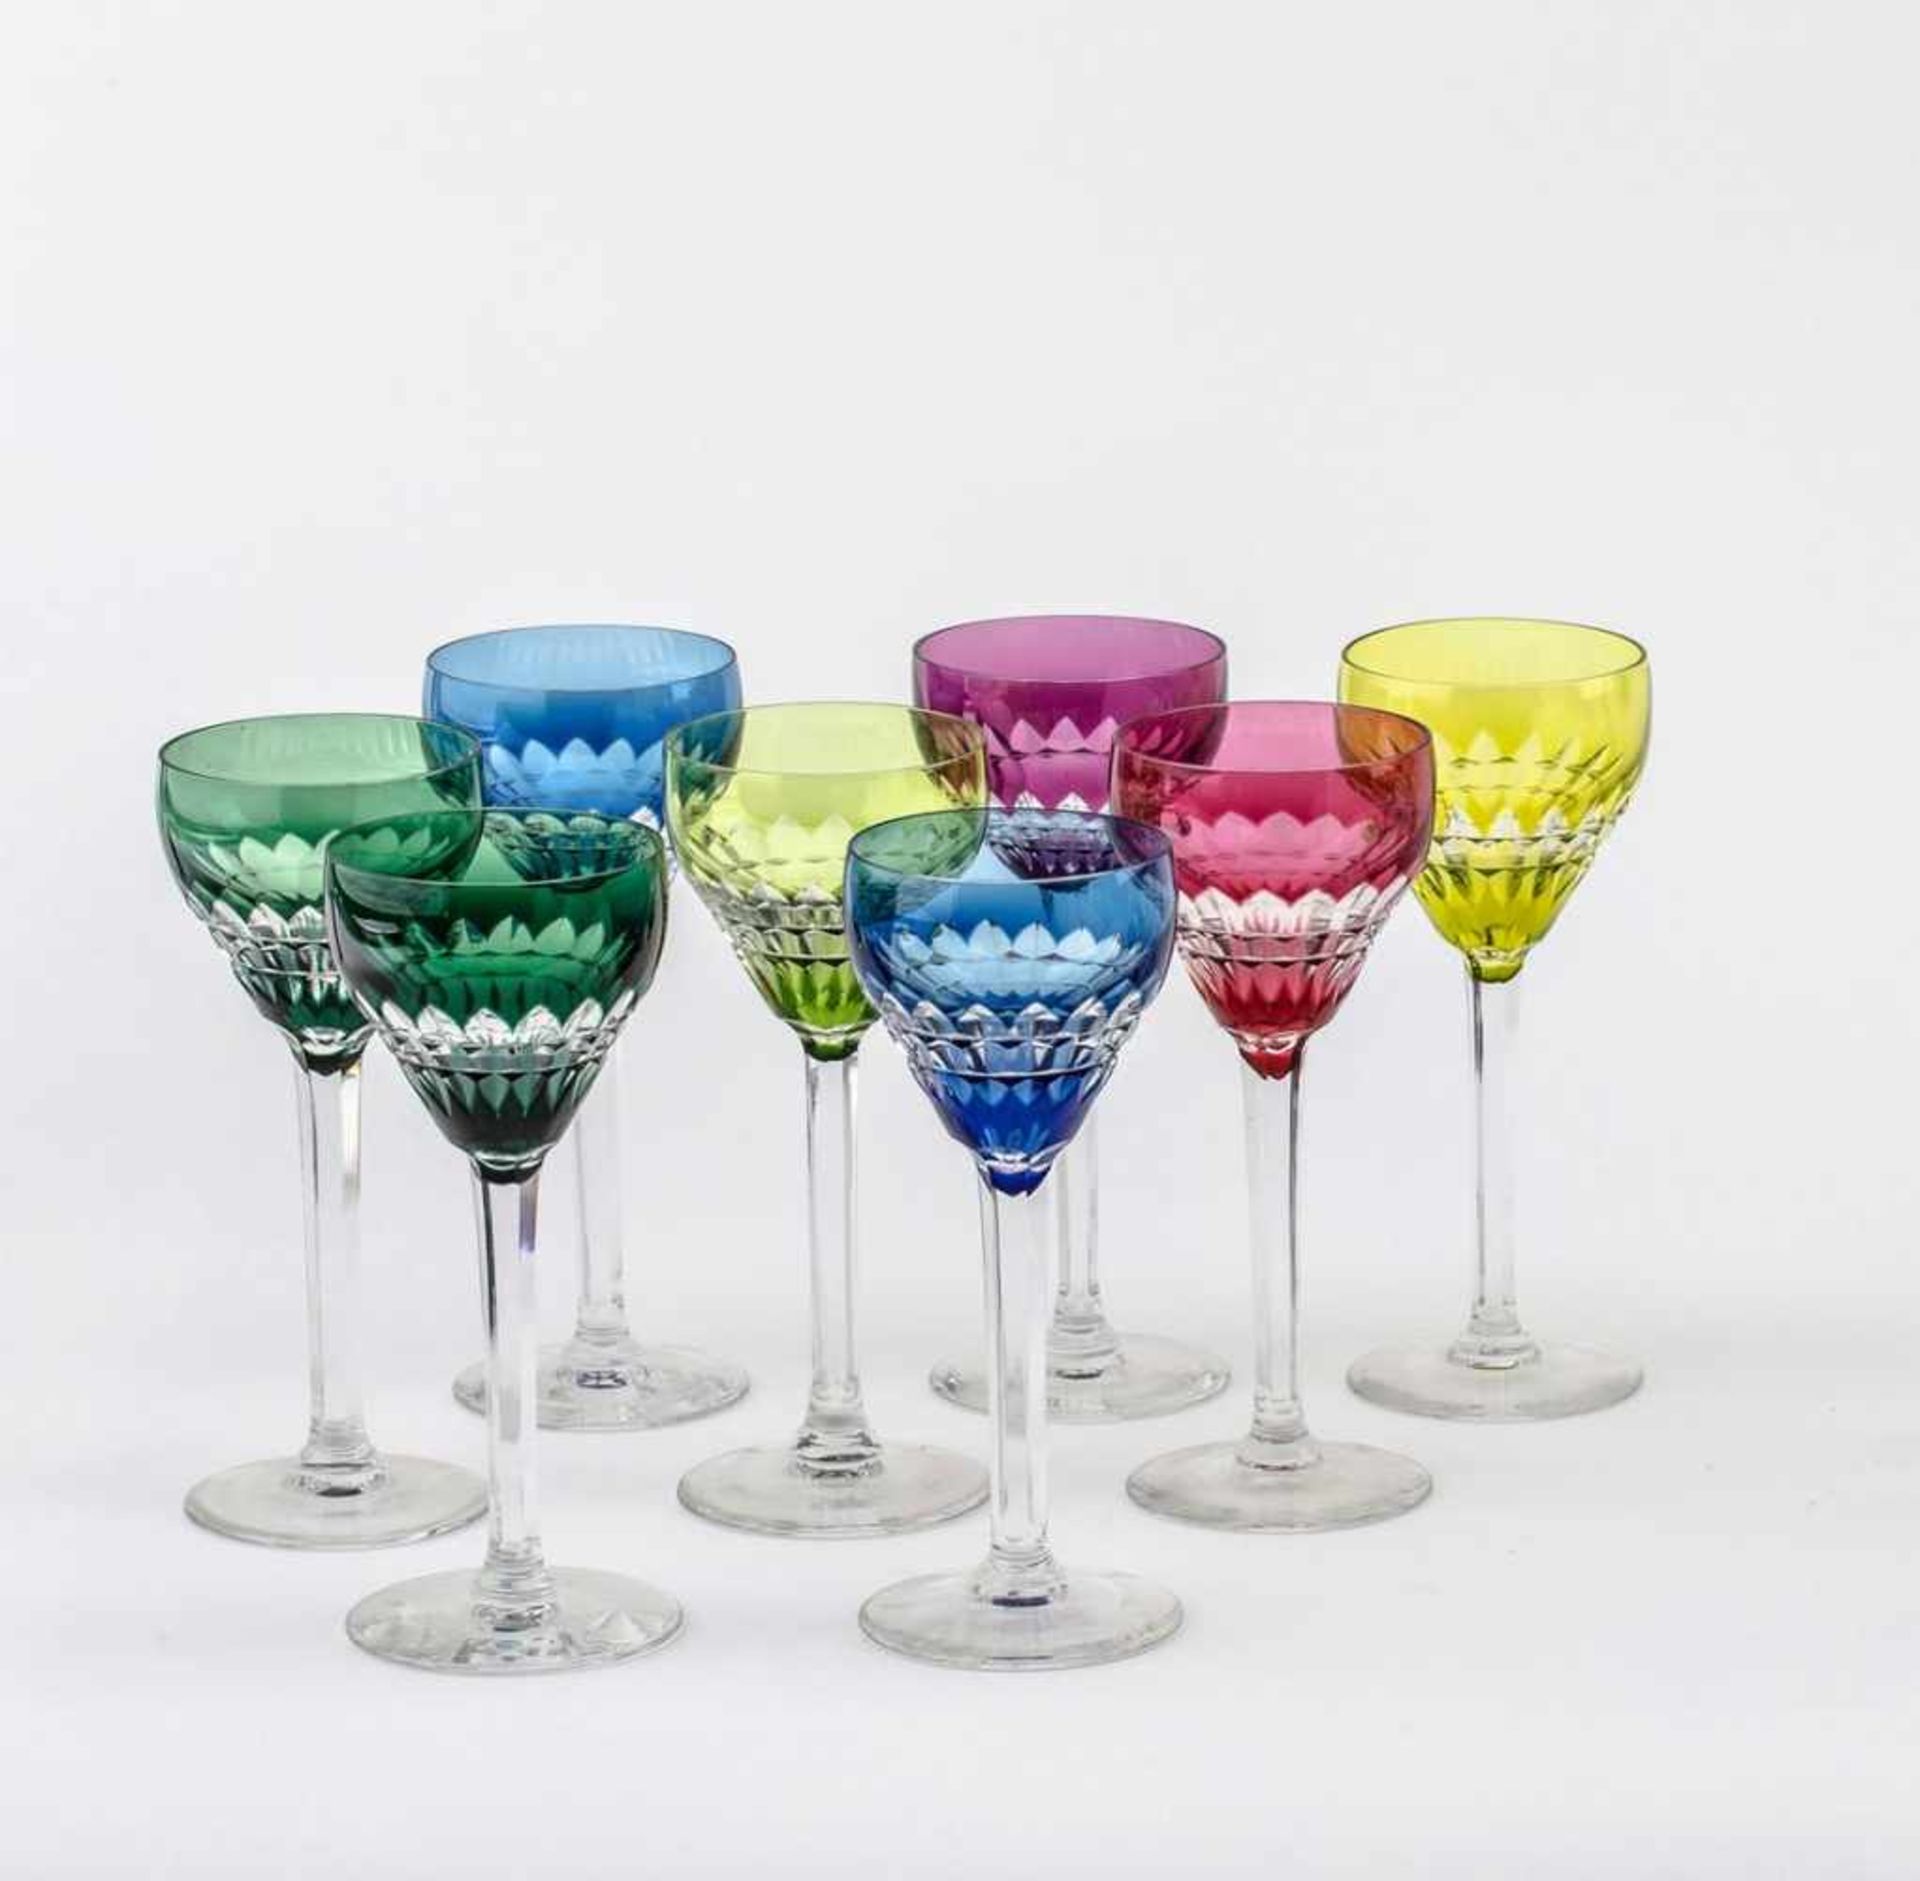 Acht SüdweinrömerKristallglas. Runder Stand, facettierter Schaft, glockenförmige, farbig überfangene